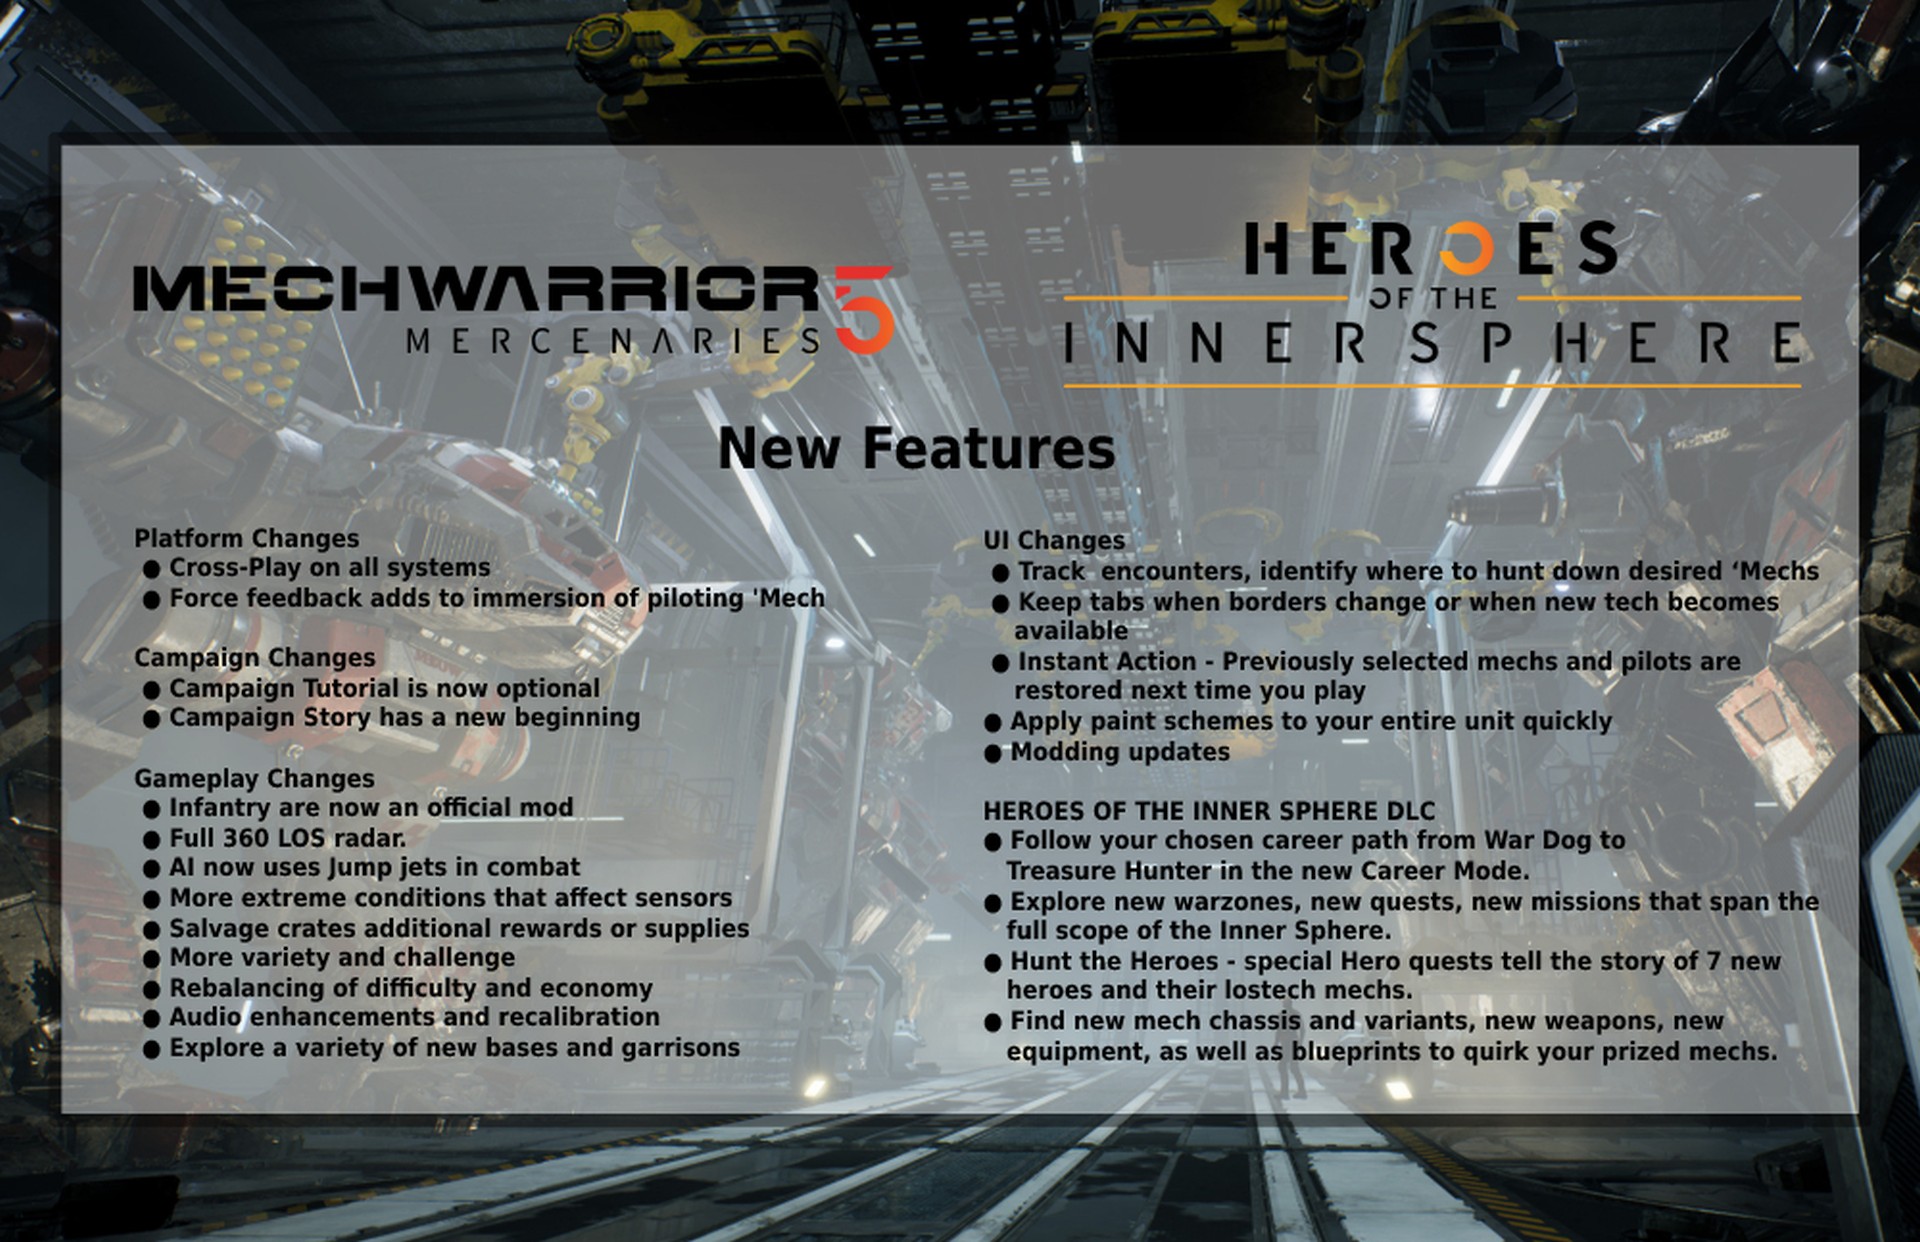 MechWarrior 5: Mercenaries - New Features